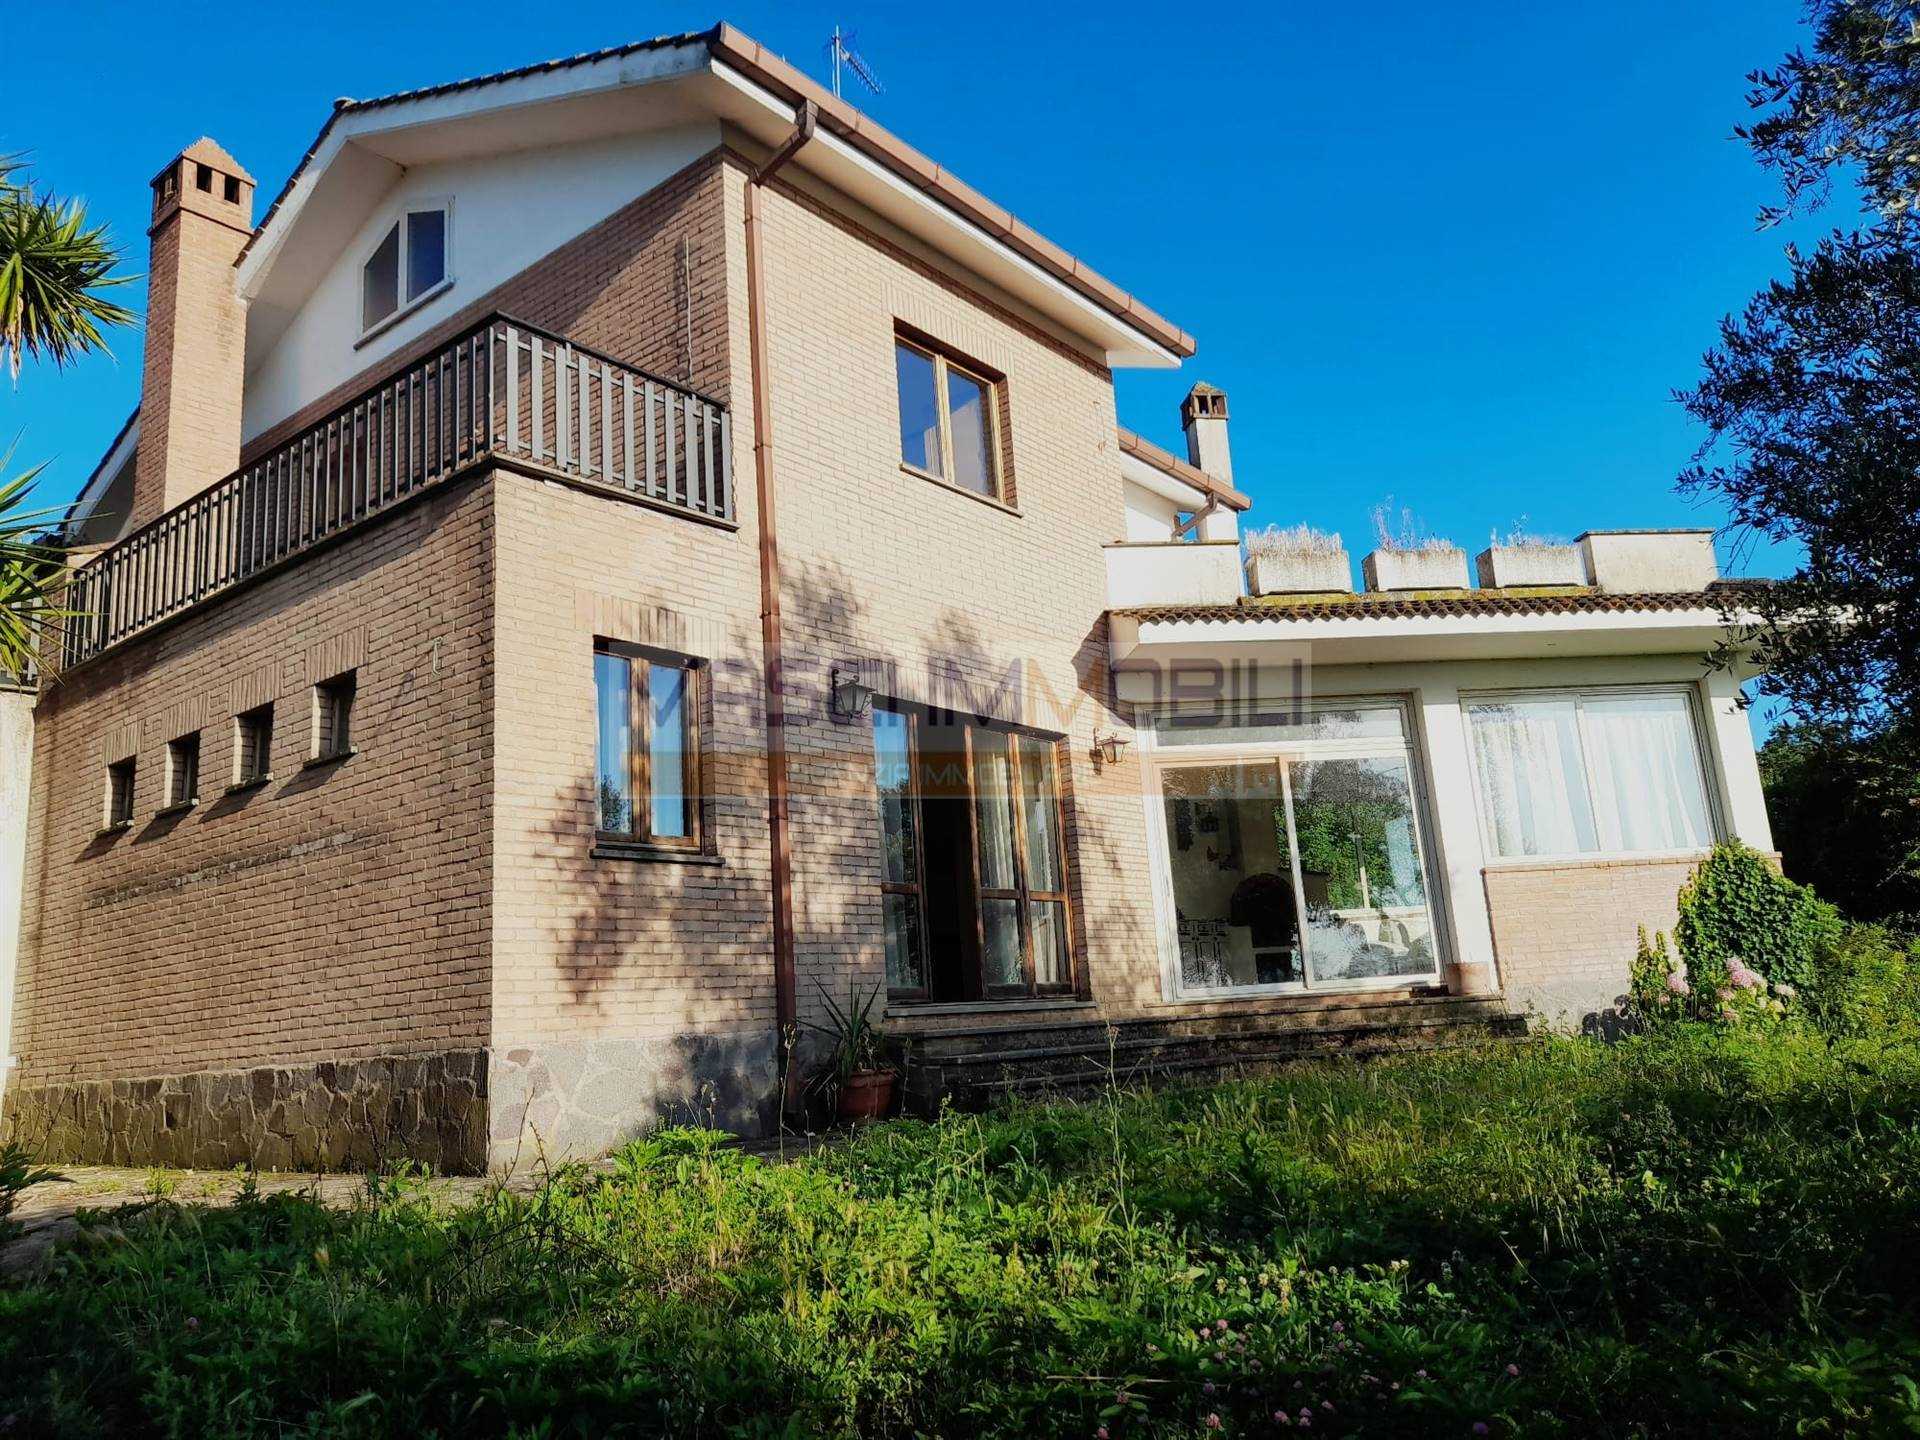 Villa in vendita a Civitella San Paolo, 4 locali, prezzo € 240.000 | CambioCasa.it